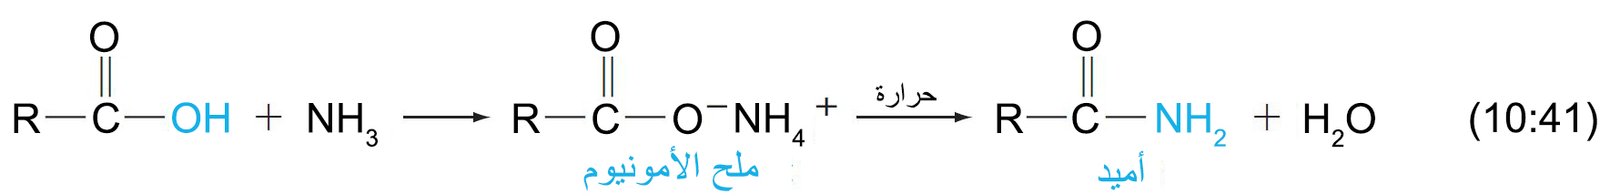 equation 10 41a